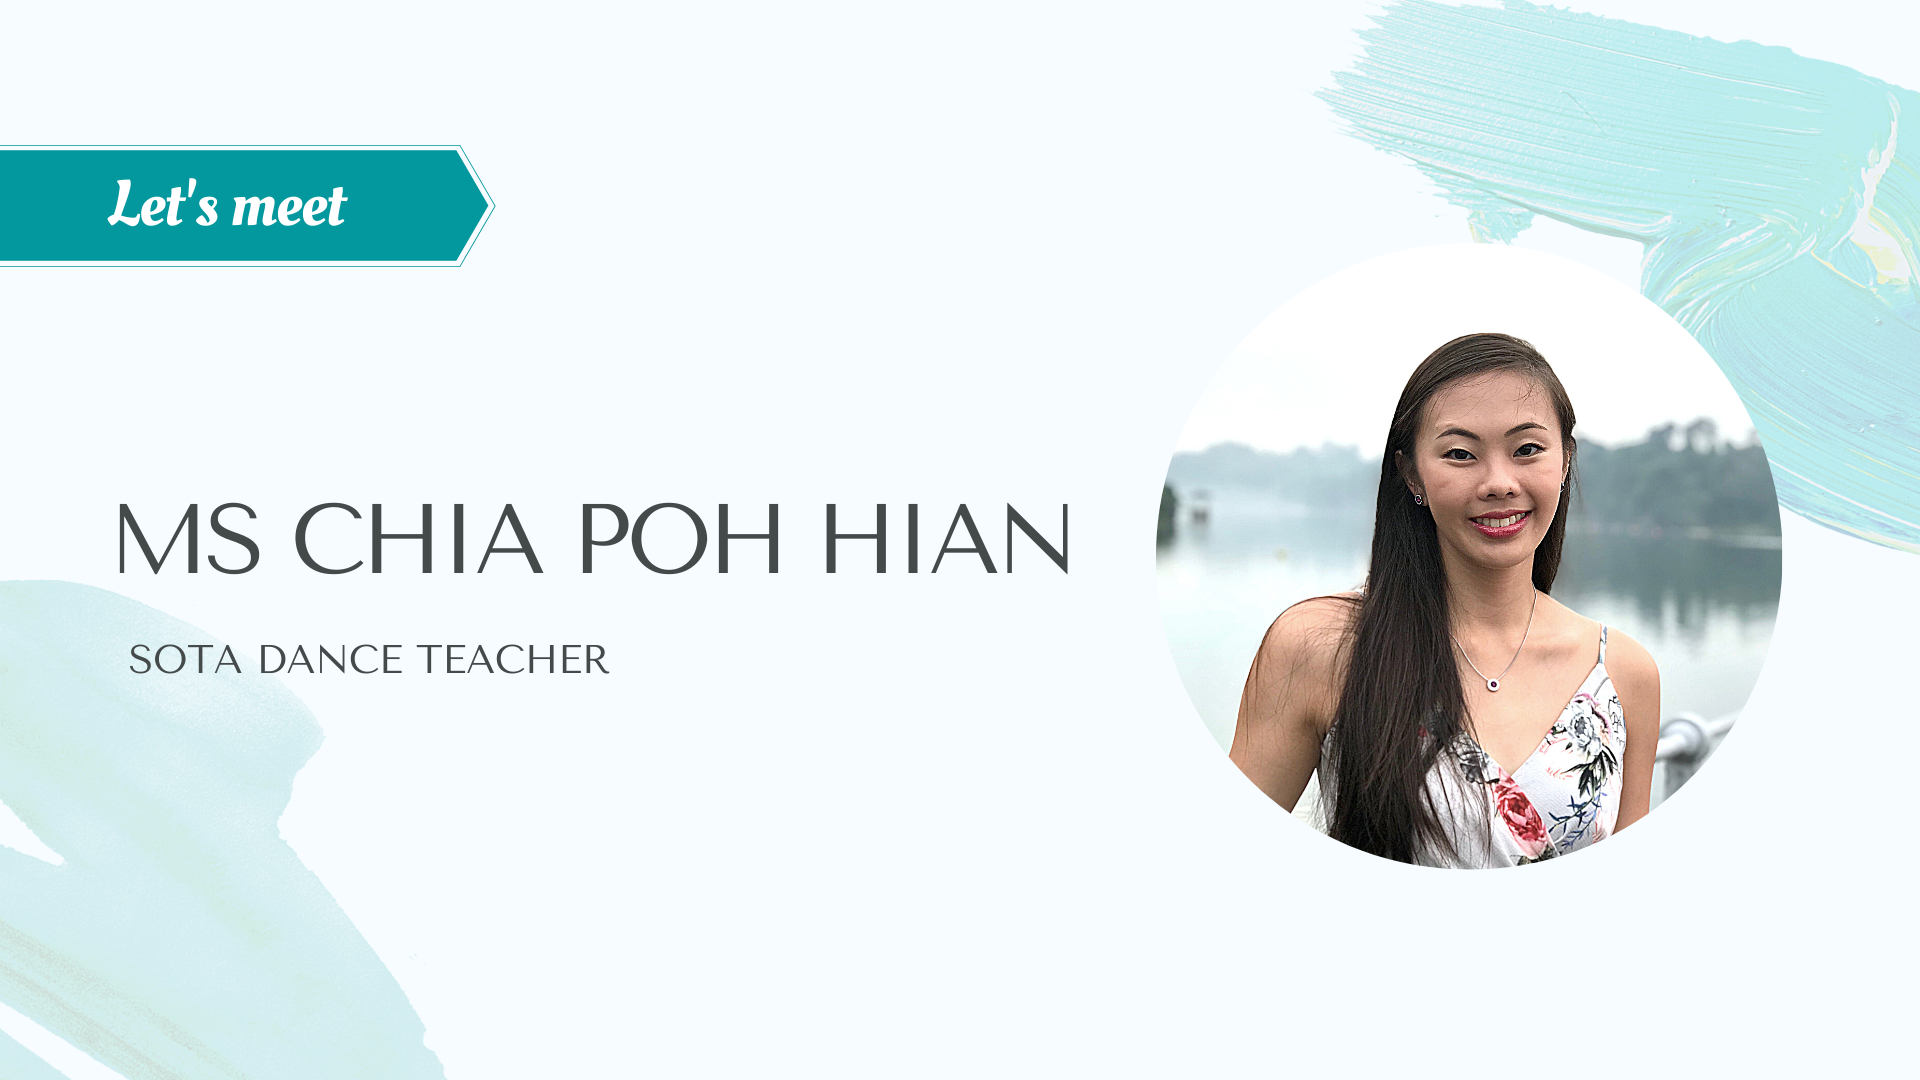 Let's meet - Ms Chia Poh Hian